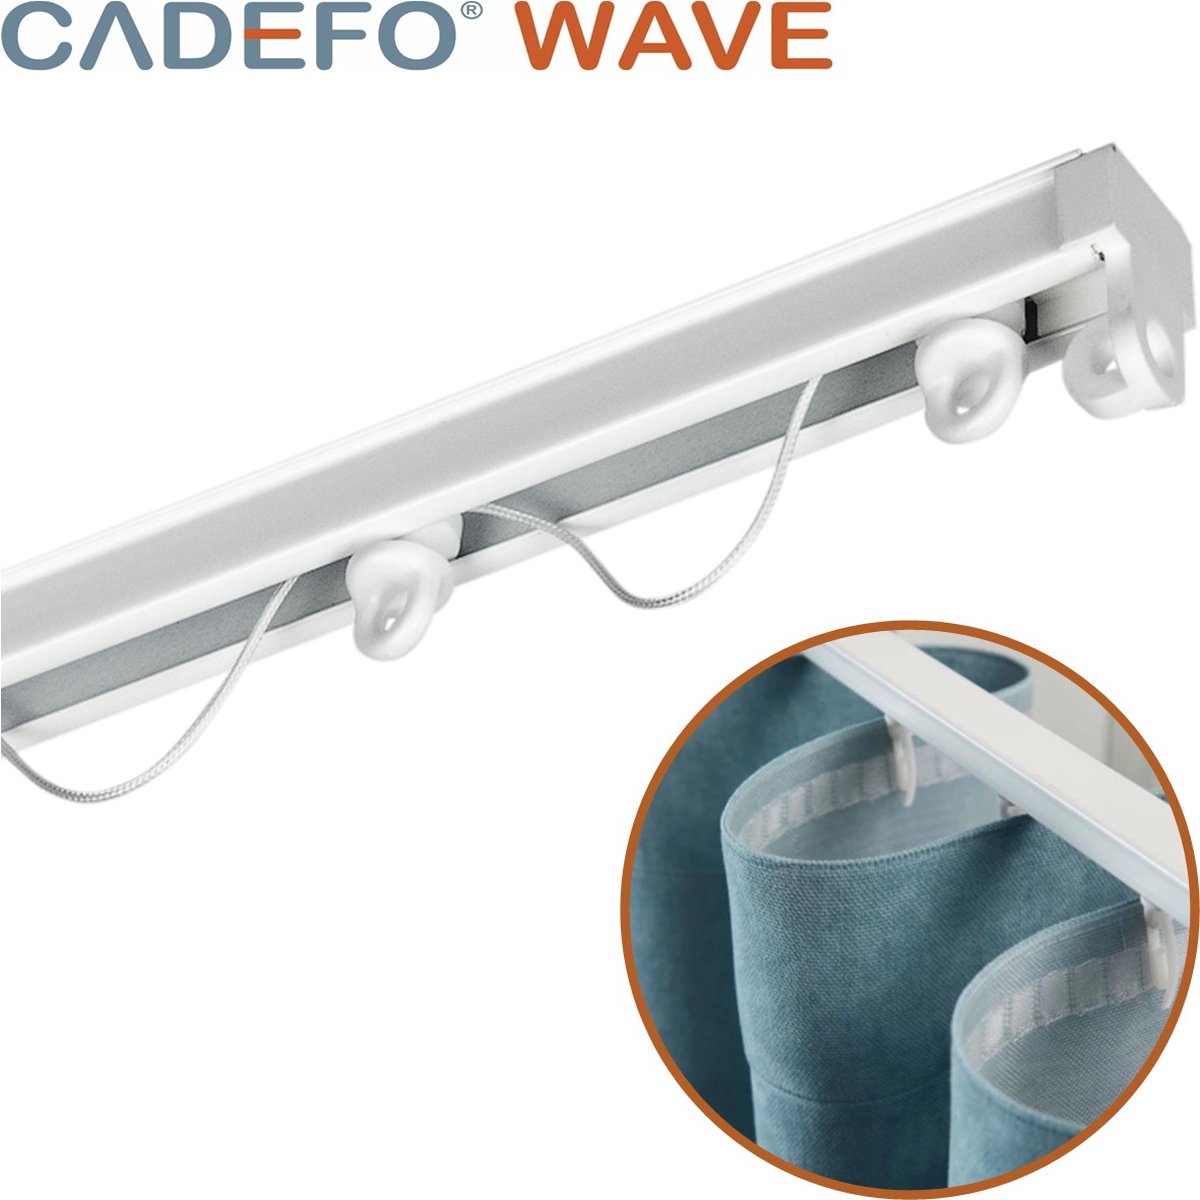 CADEFO WAVE (151 - 200 cm) Gordijnrails - Compleet op maat! - UIT 1 STUK - Leverbaar tot 6 meter - Plafondbevestiging - Lengte 163 cm